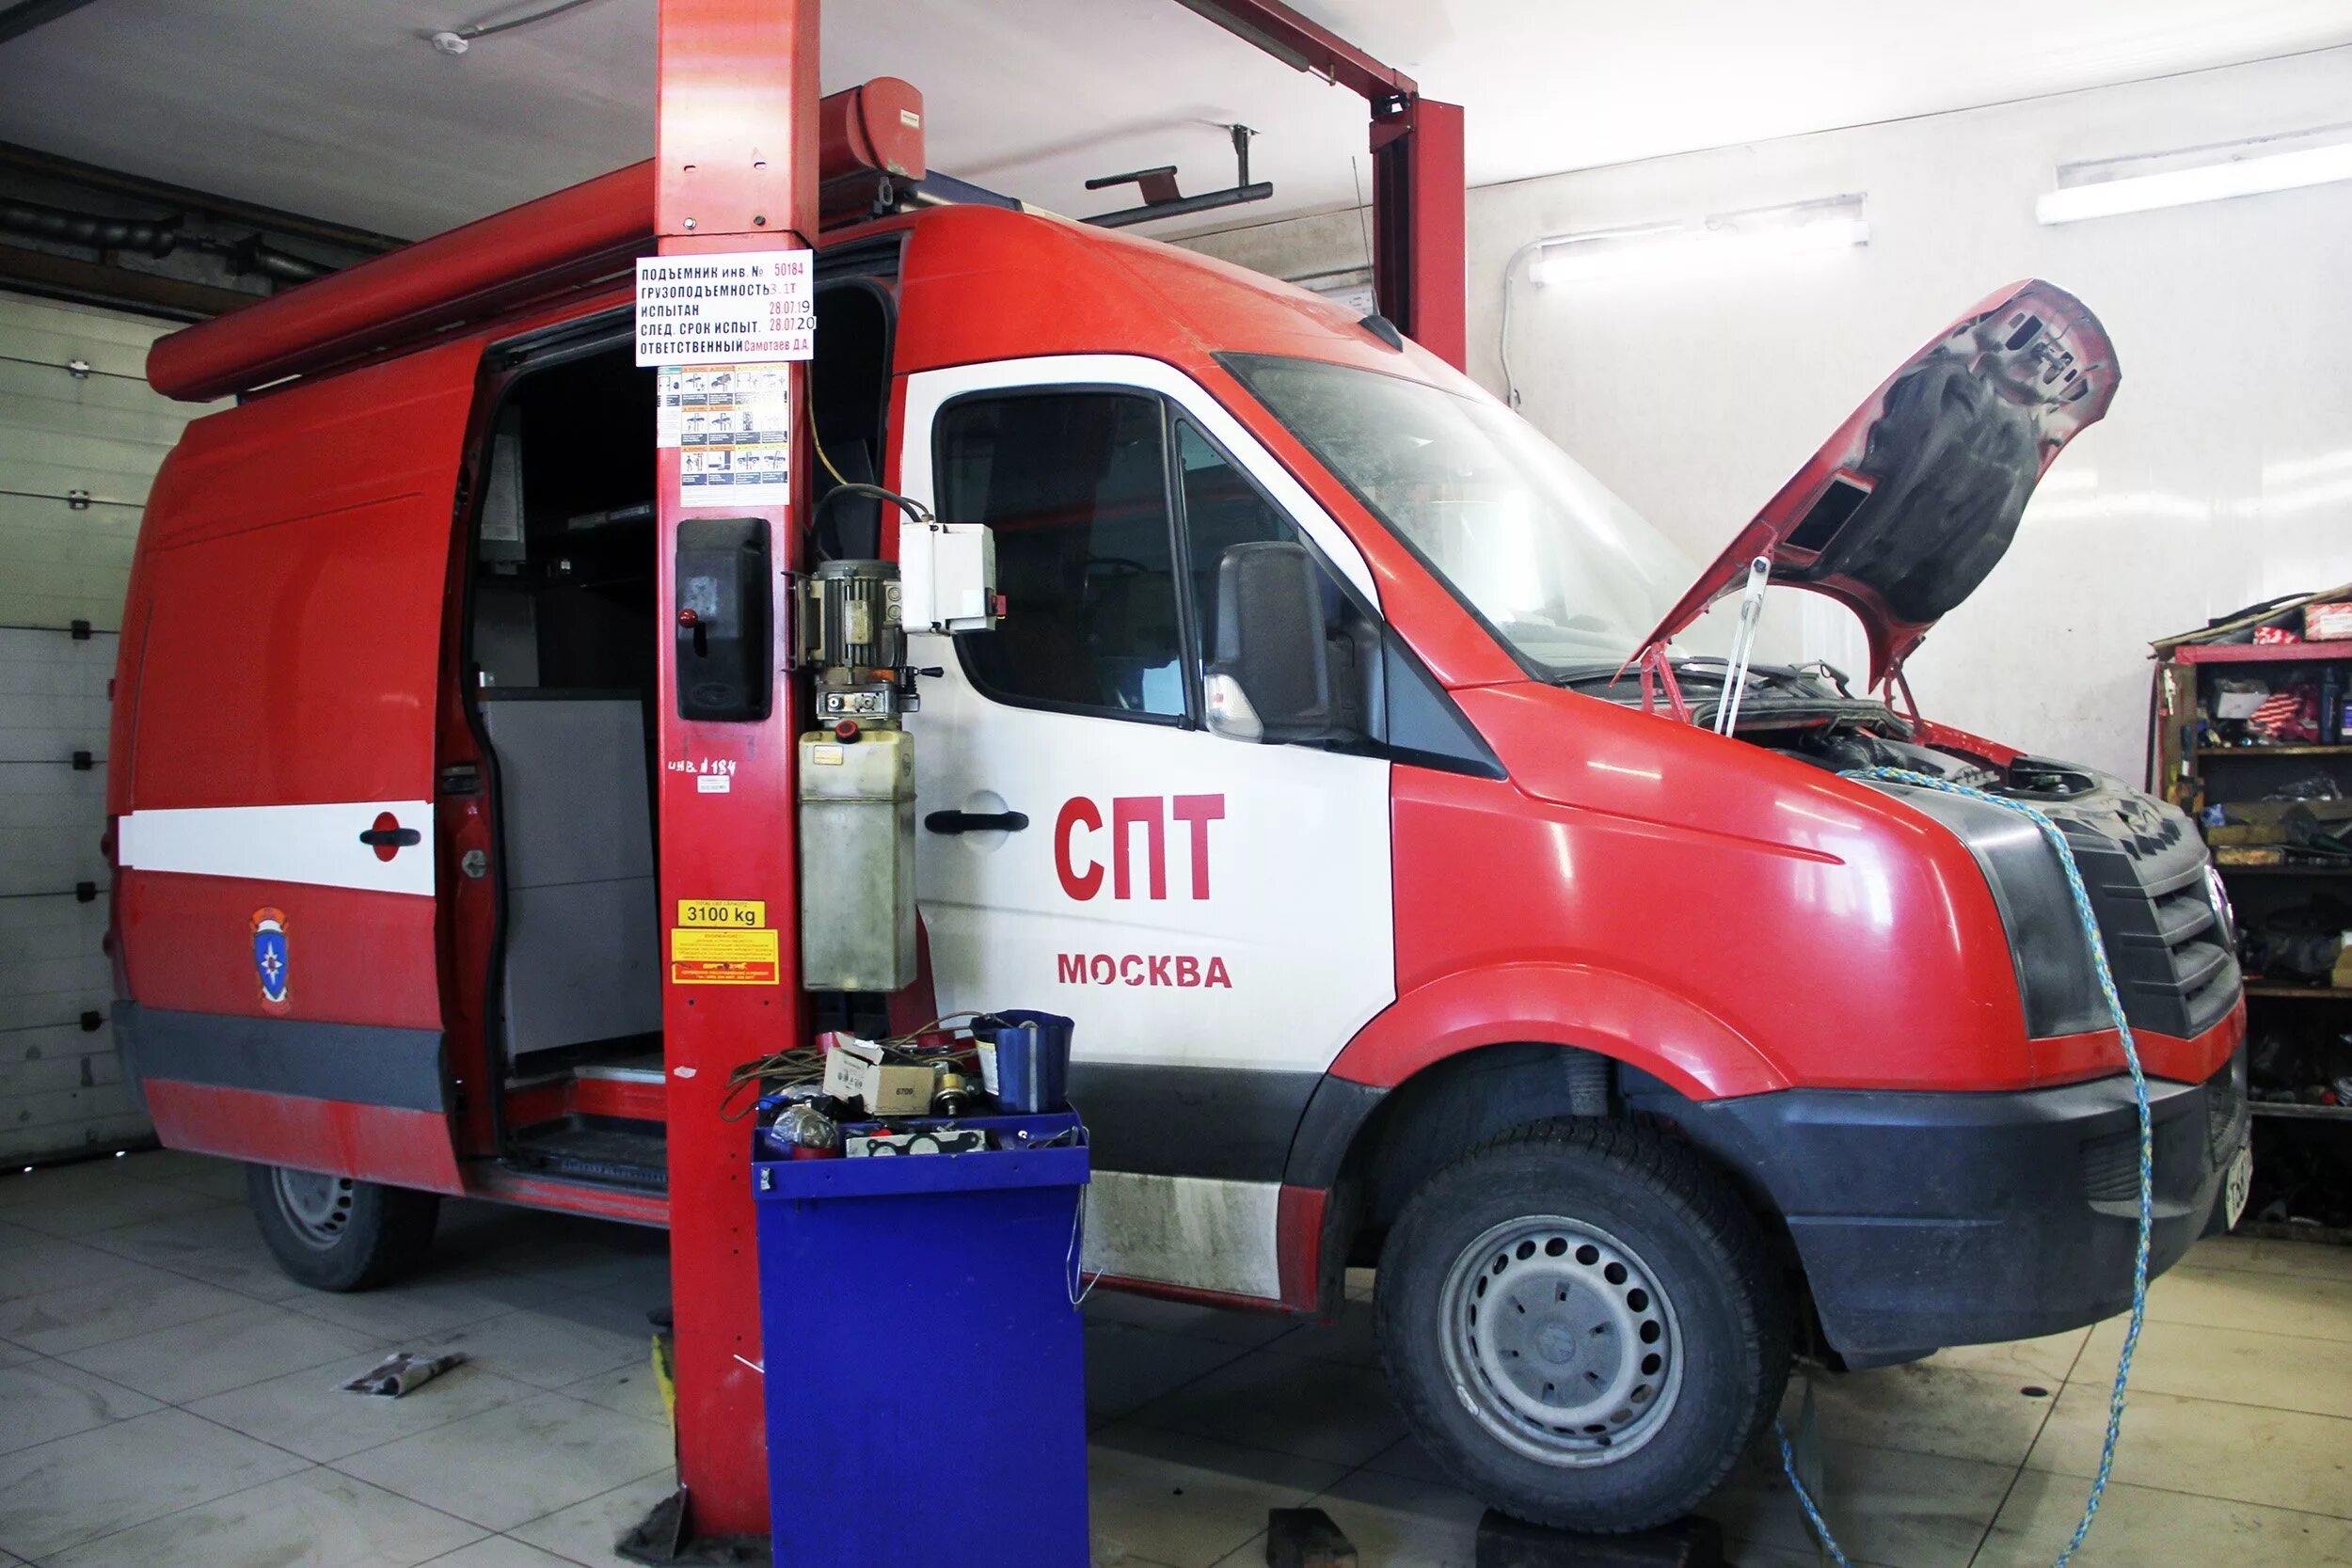 Специальный пожарно технический автомобиль. ГБУ ПТЦ паст. Пожарный аварийно-спасательный автомобиль. Пожарная техника и оборудование. Техническое обслуживание пожарных автомобилей.